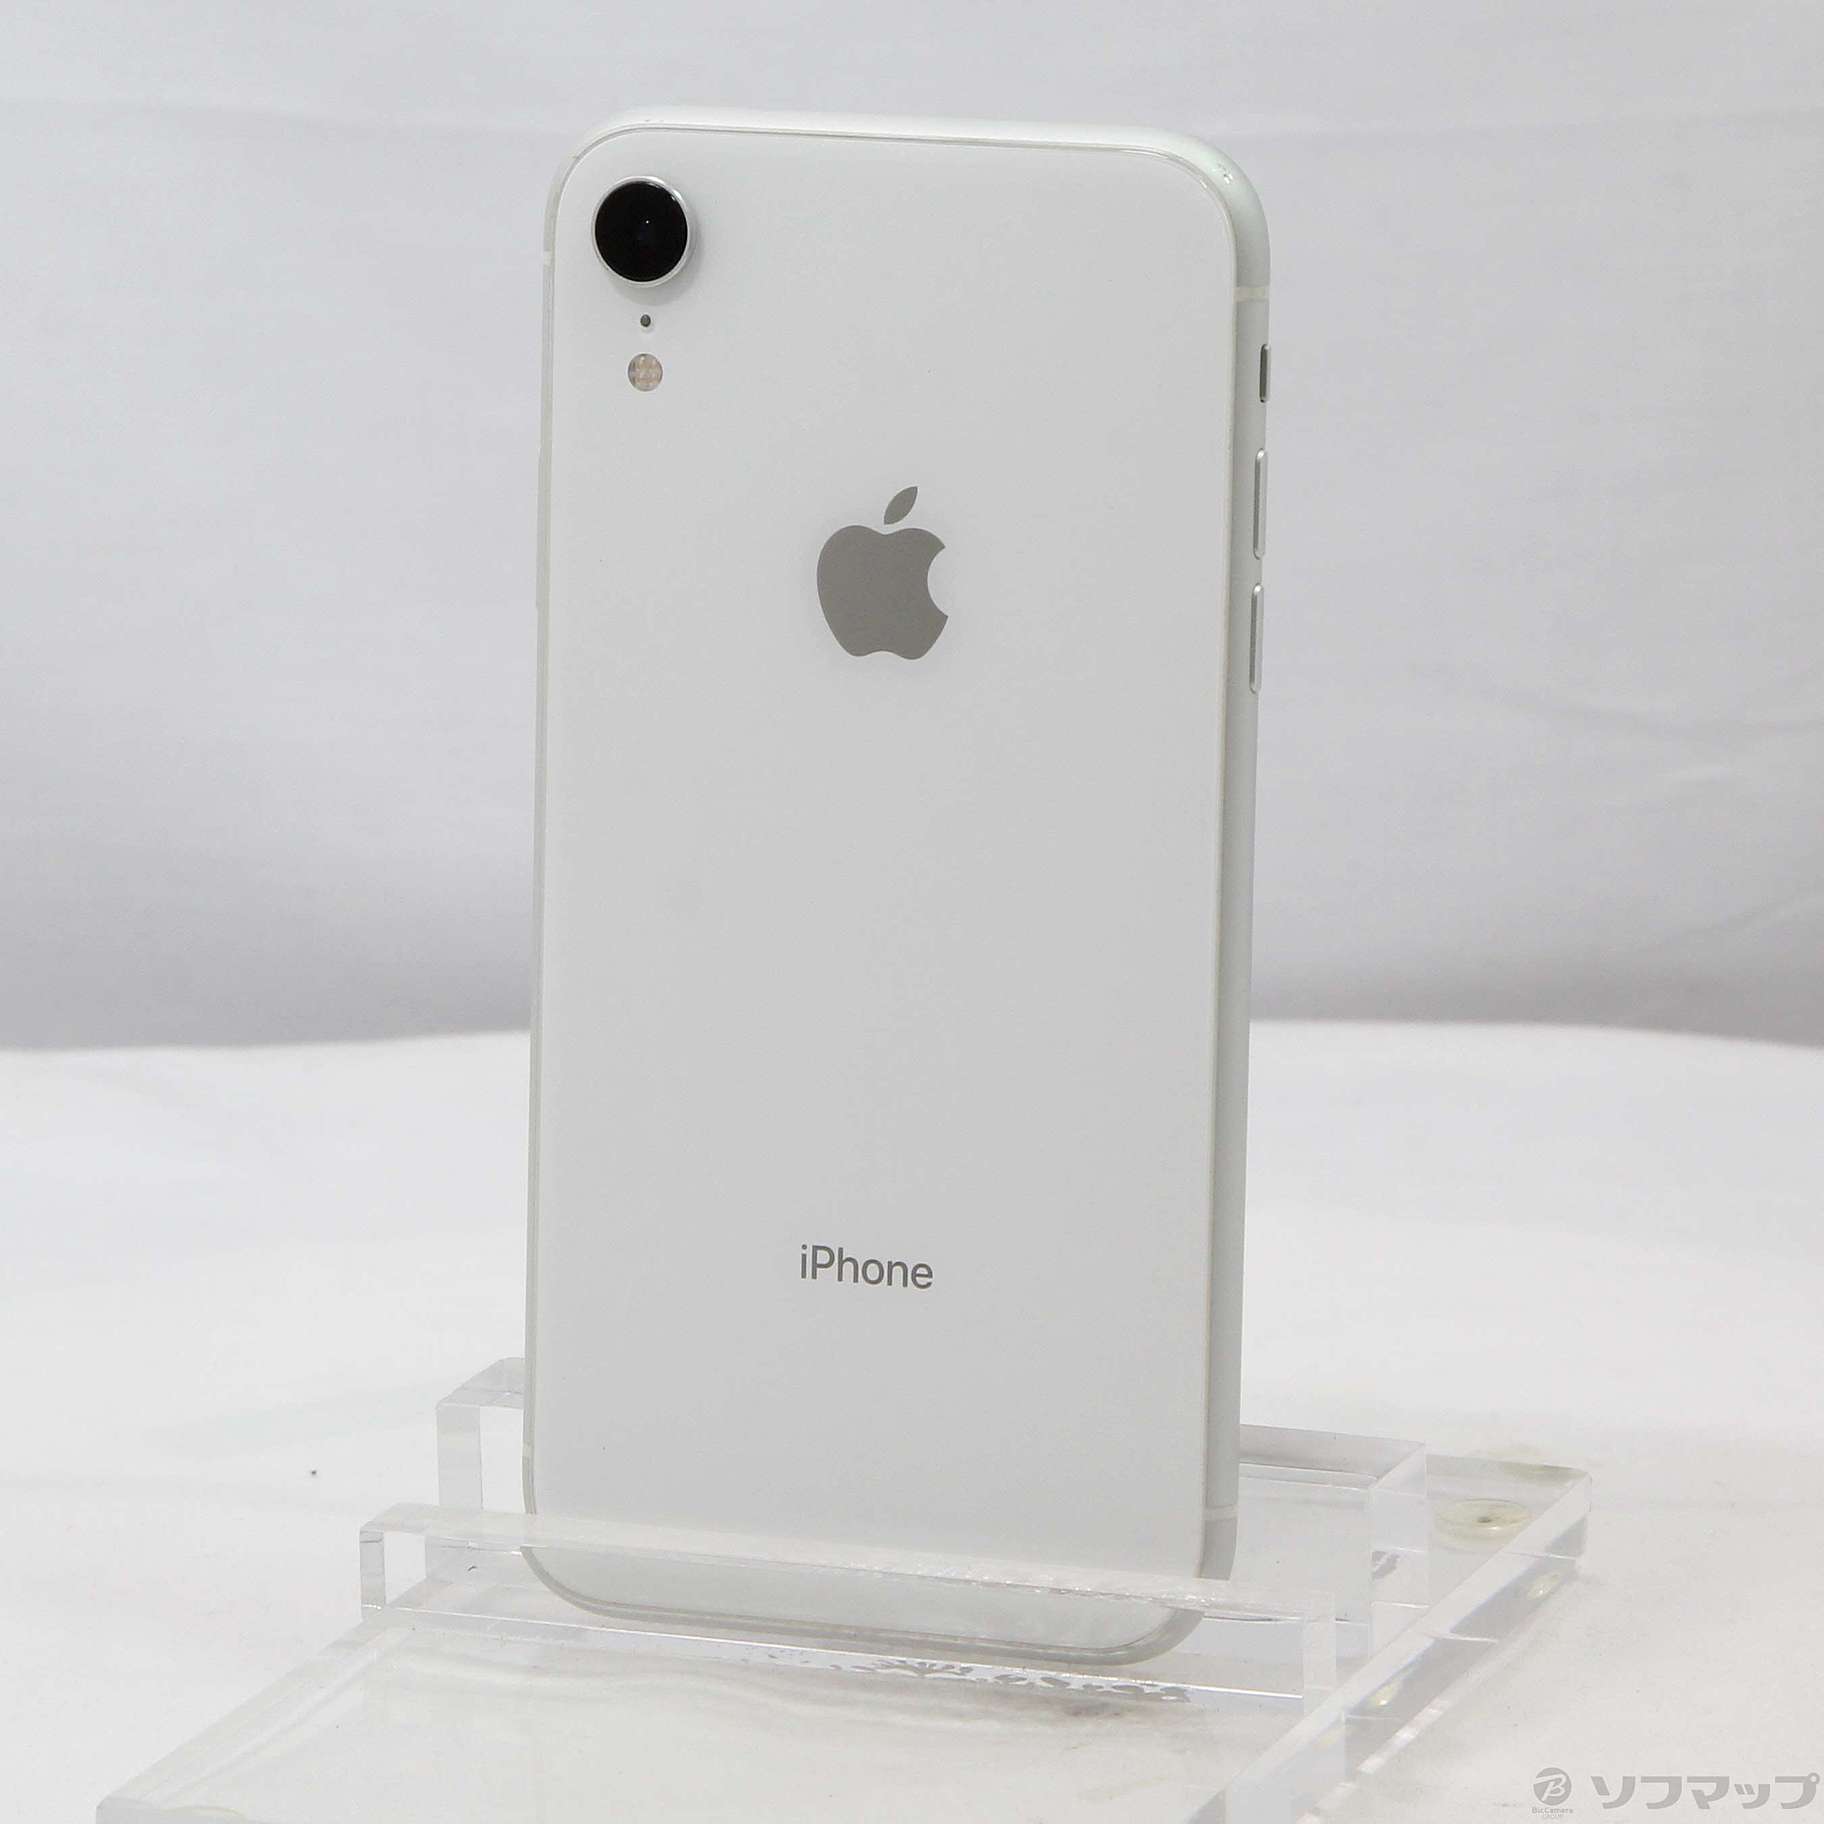 日本代理店正規品 Apple iPhoneXR 64GB ホワイト | mcshoescolombia.com.co